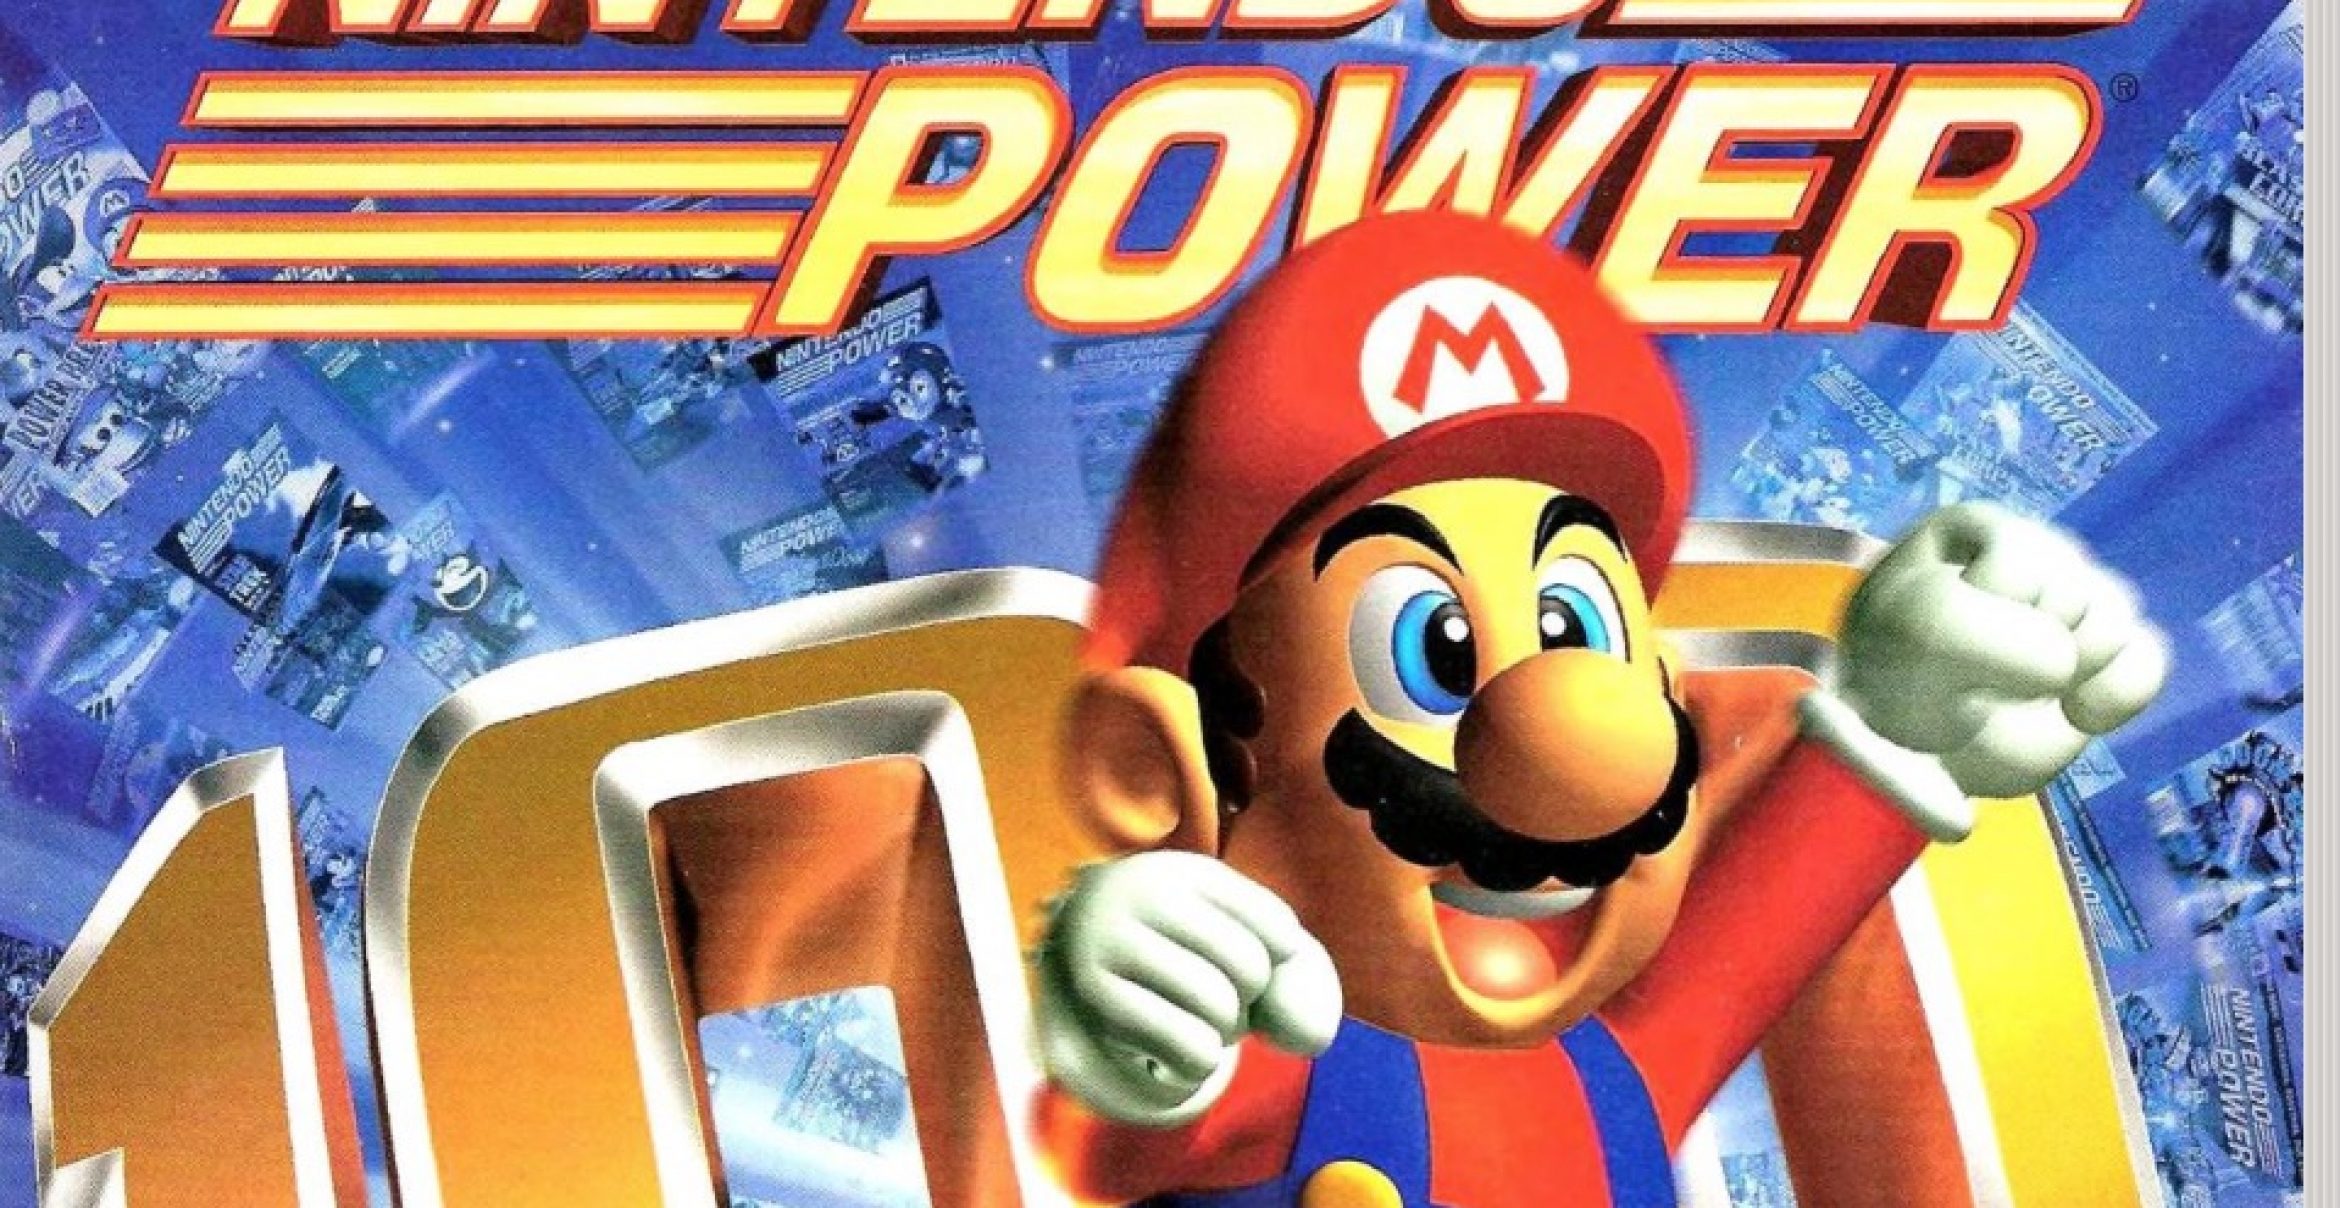 Nintendo power. Nintendo Power 1 выпуск. Популярные герои видеоигр Nintendo 2000-х. Nintendo Power game Teaser.